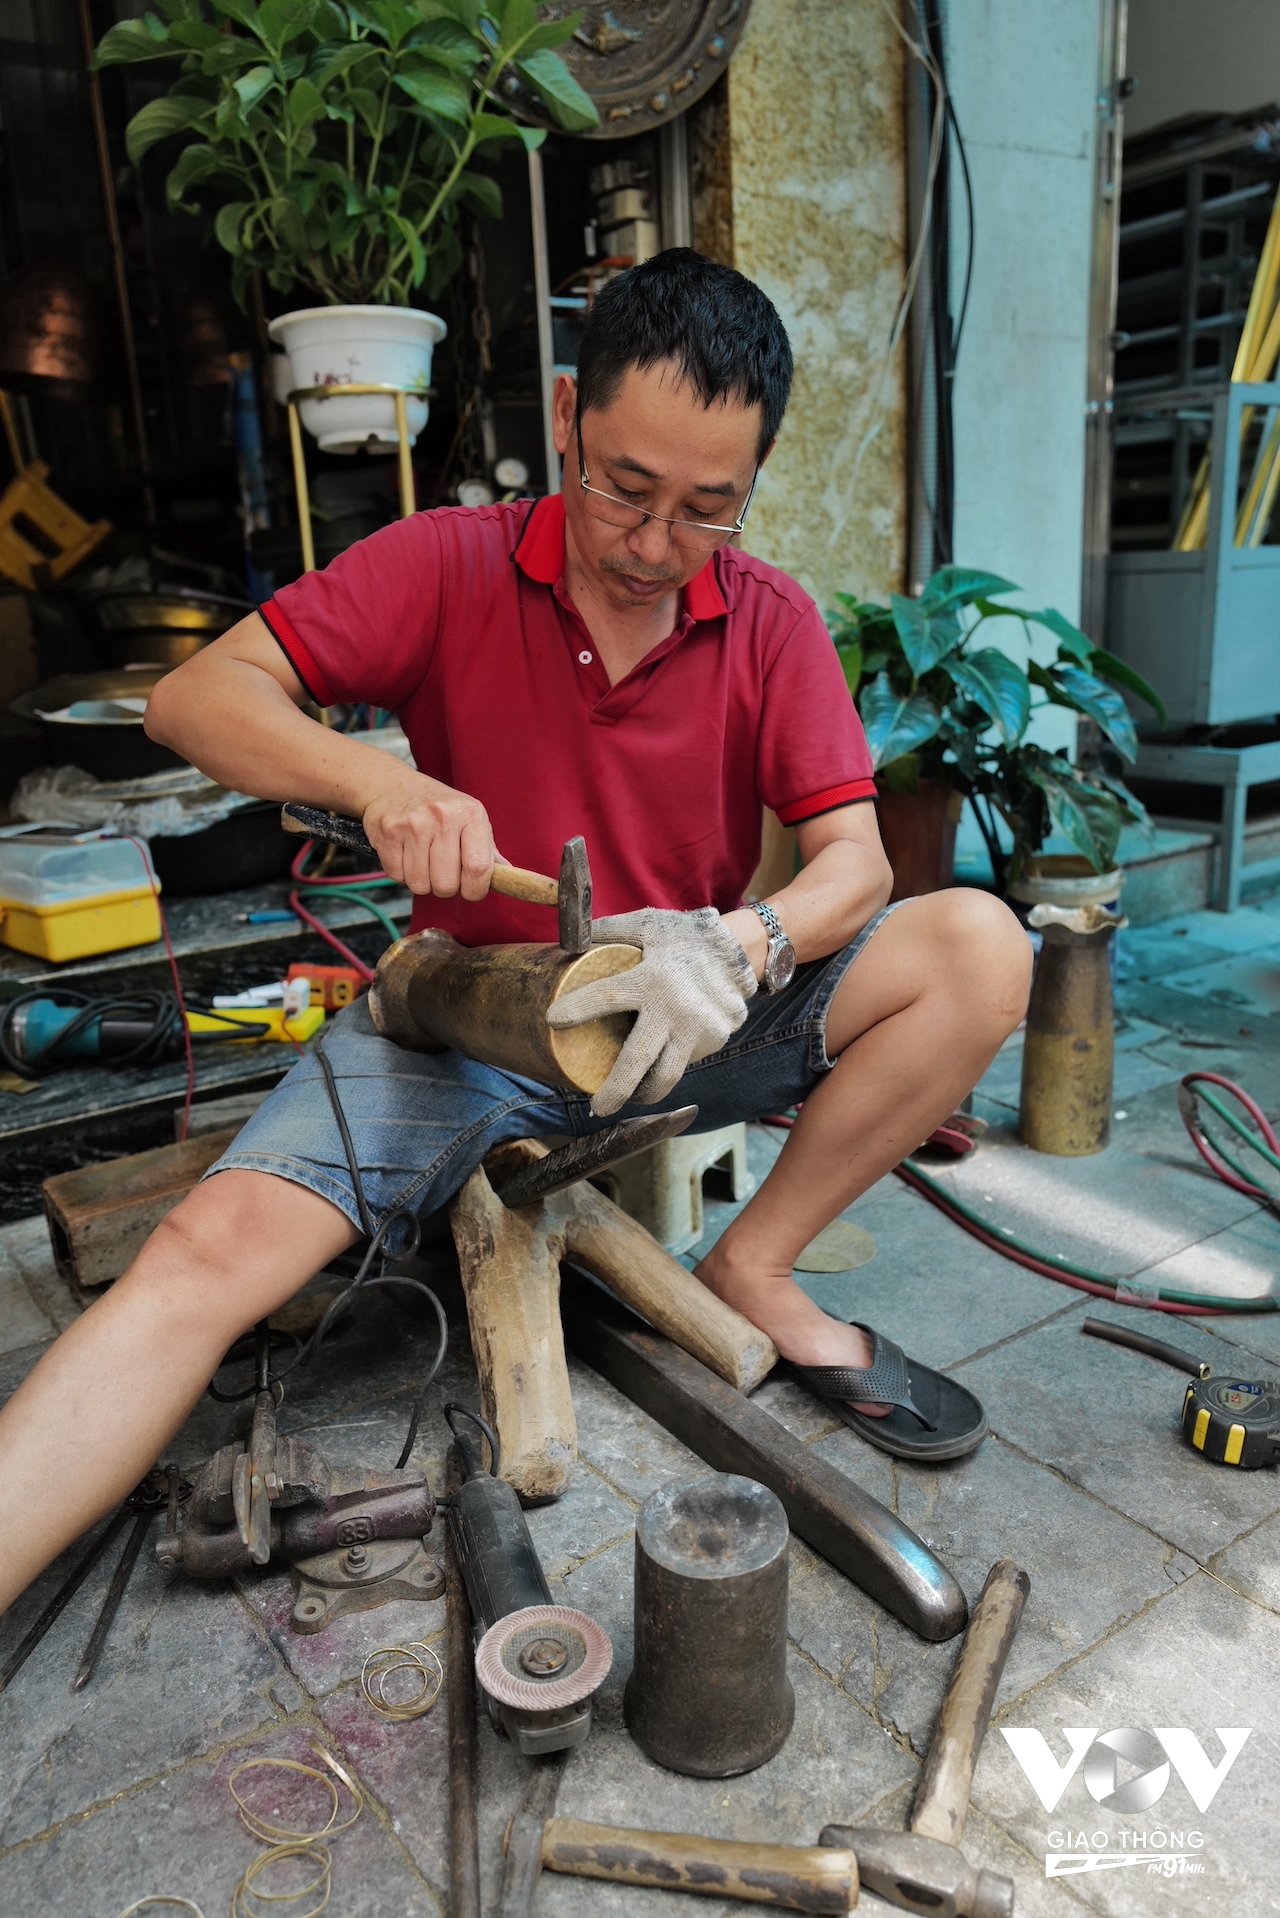 Một chiếc bình hoa bằng đồng thau đang thành hình qua đôi bàn tay khéo léo của người thợ trên phố Hàng Đồng. Những sản phẩm thủ công này vẫn có nhiều người tìm mua để sử dụng và trang trí cho ngôi nhà theo phong cách hoài cổ